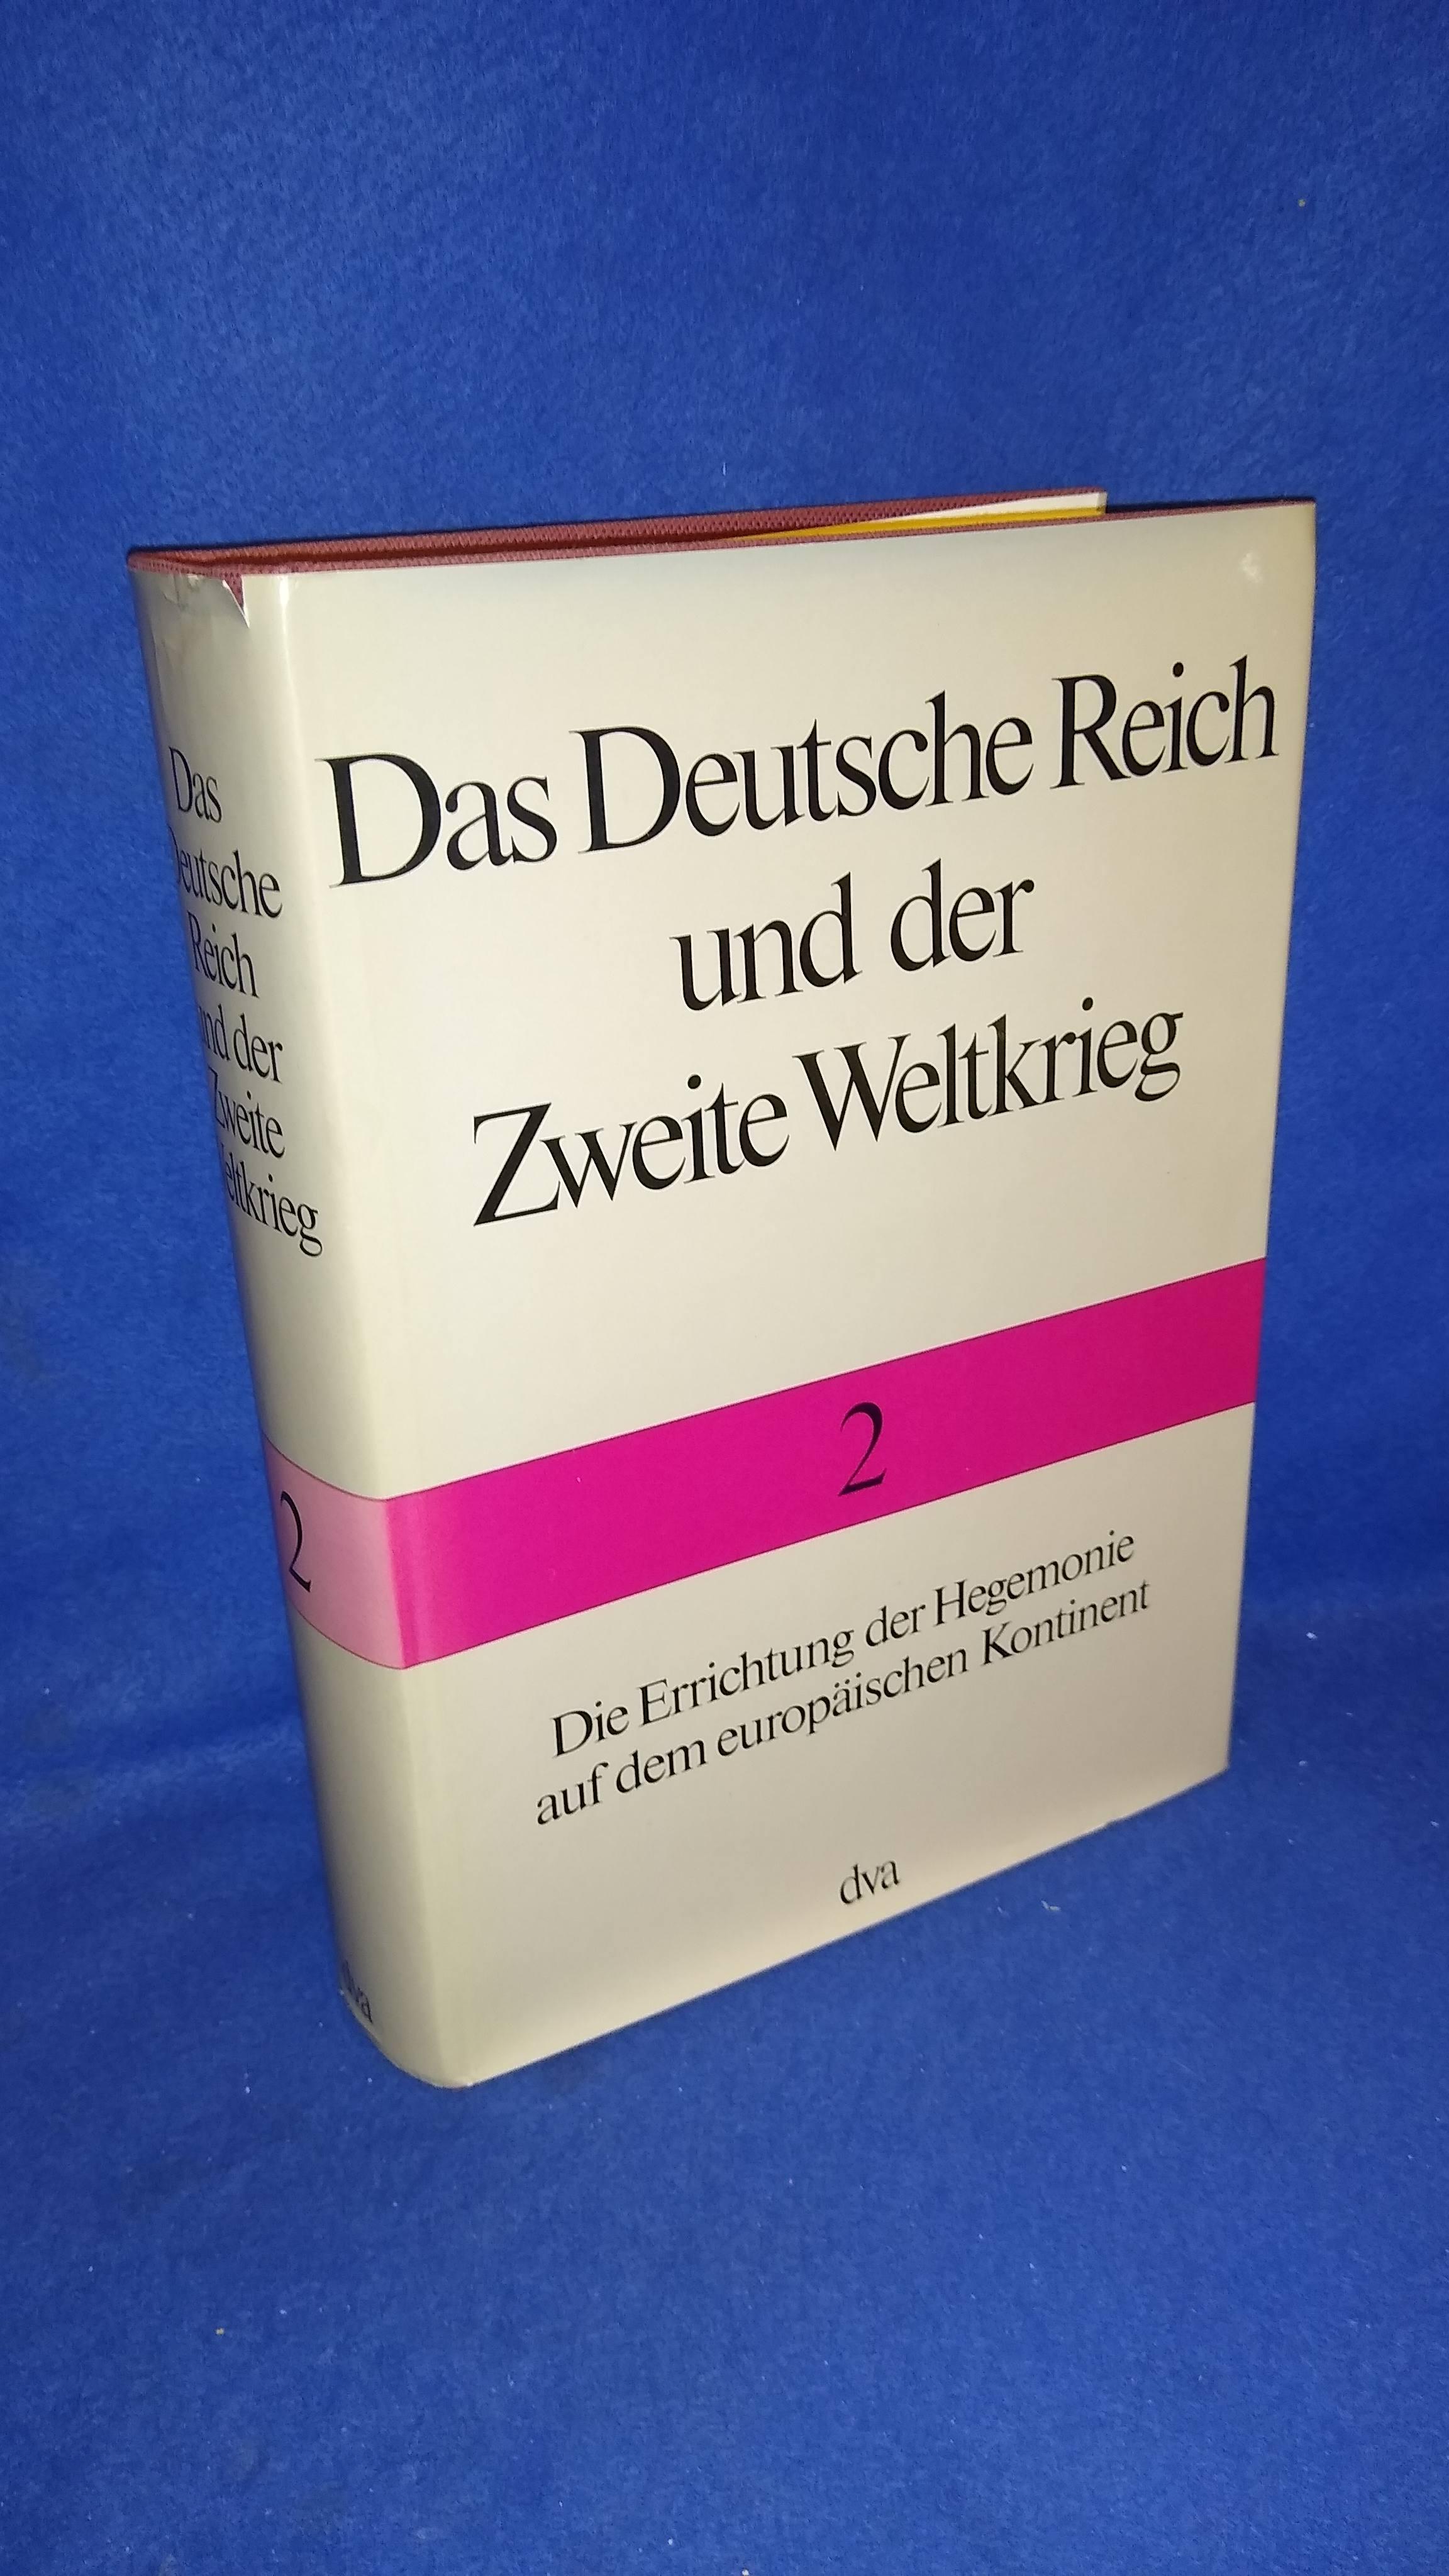 Das Deutsche Reich und der Zweite Weltkrieg, Bd.2: Die Errichtung der Hegemonie auf dem europäischen Kontinent.